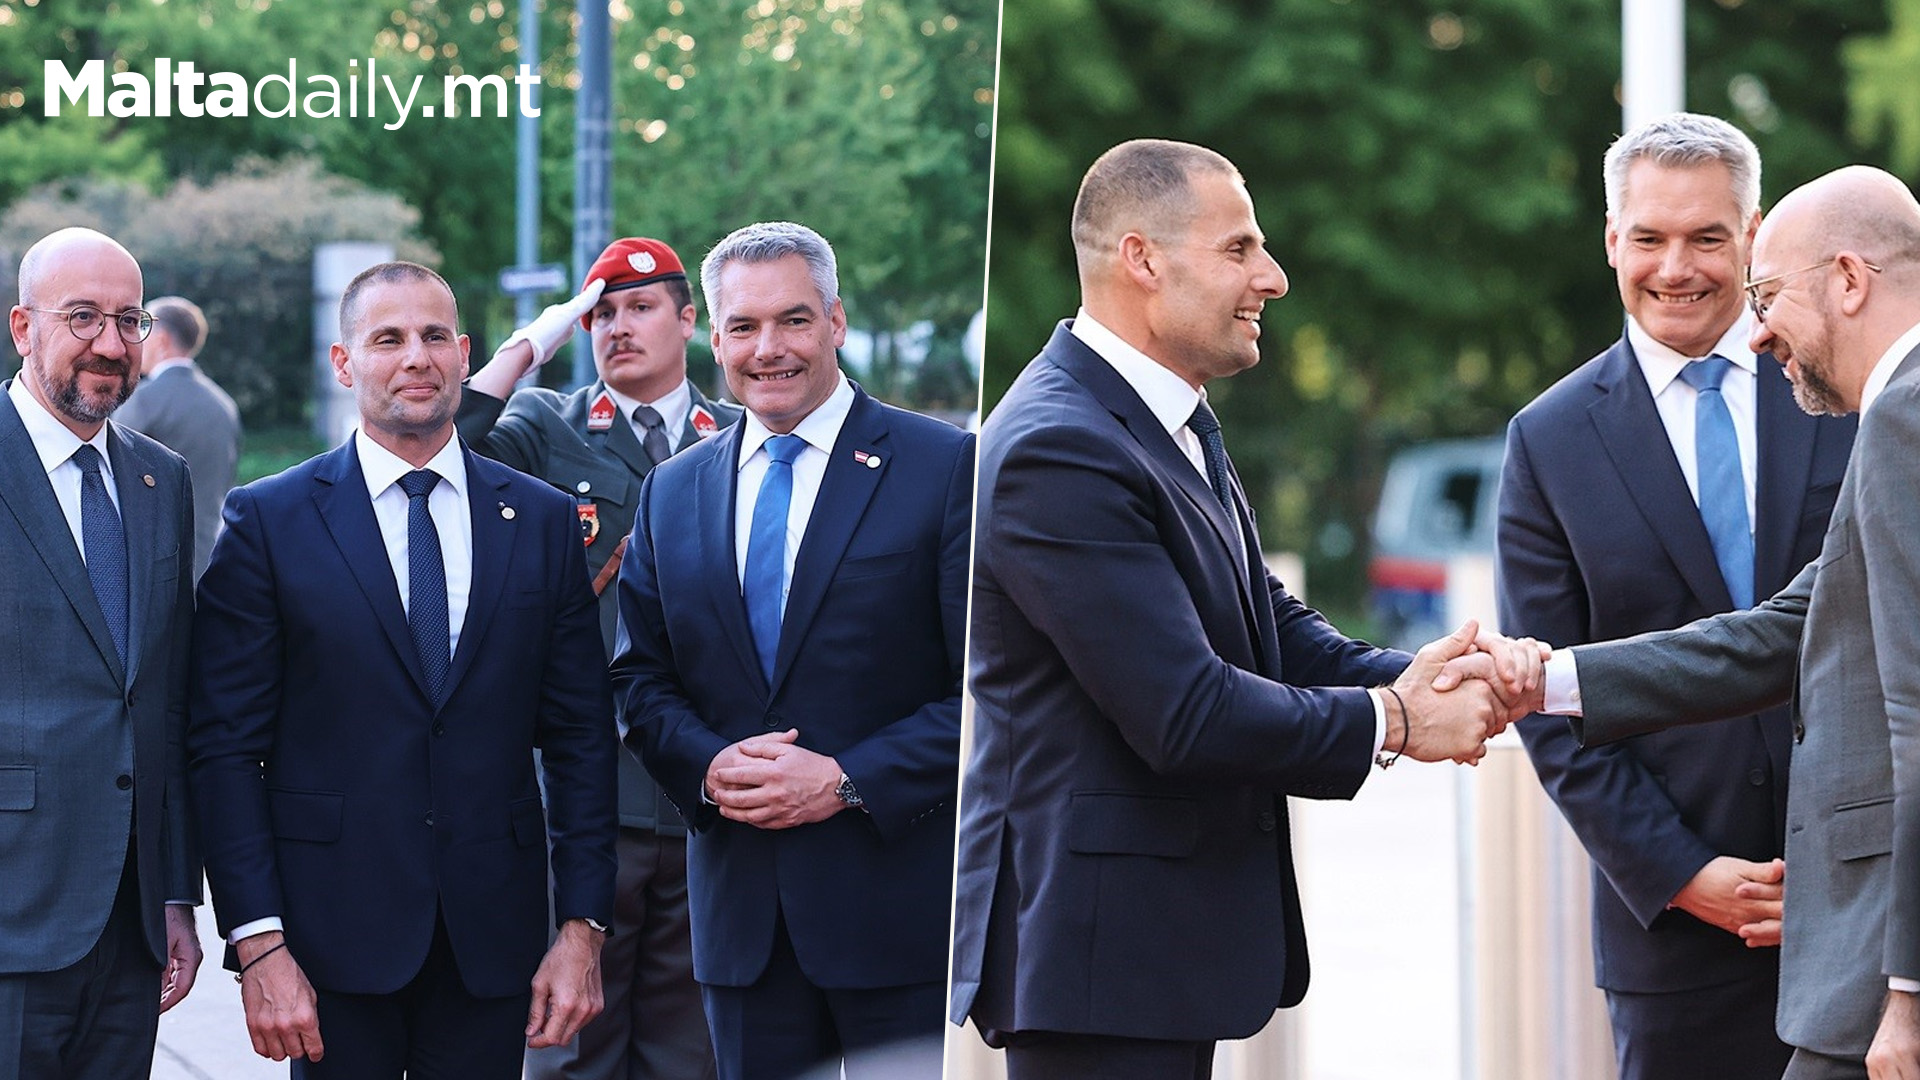 Prime Minister In Vienna For Talks On Malta’s Future